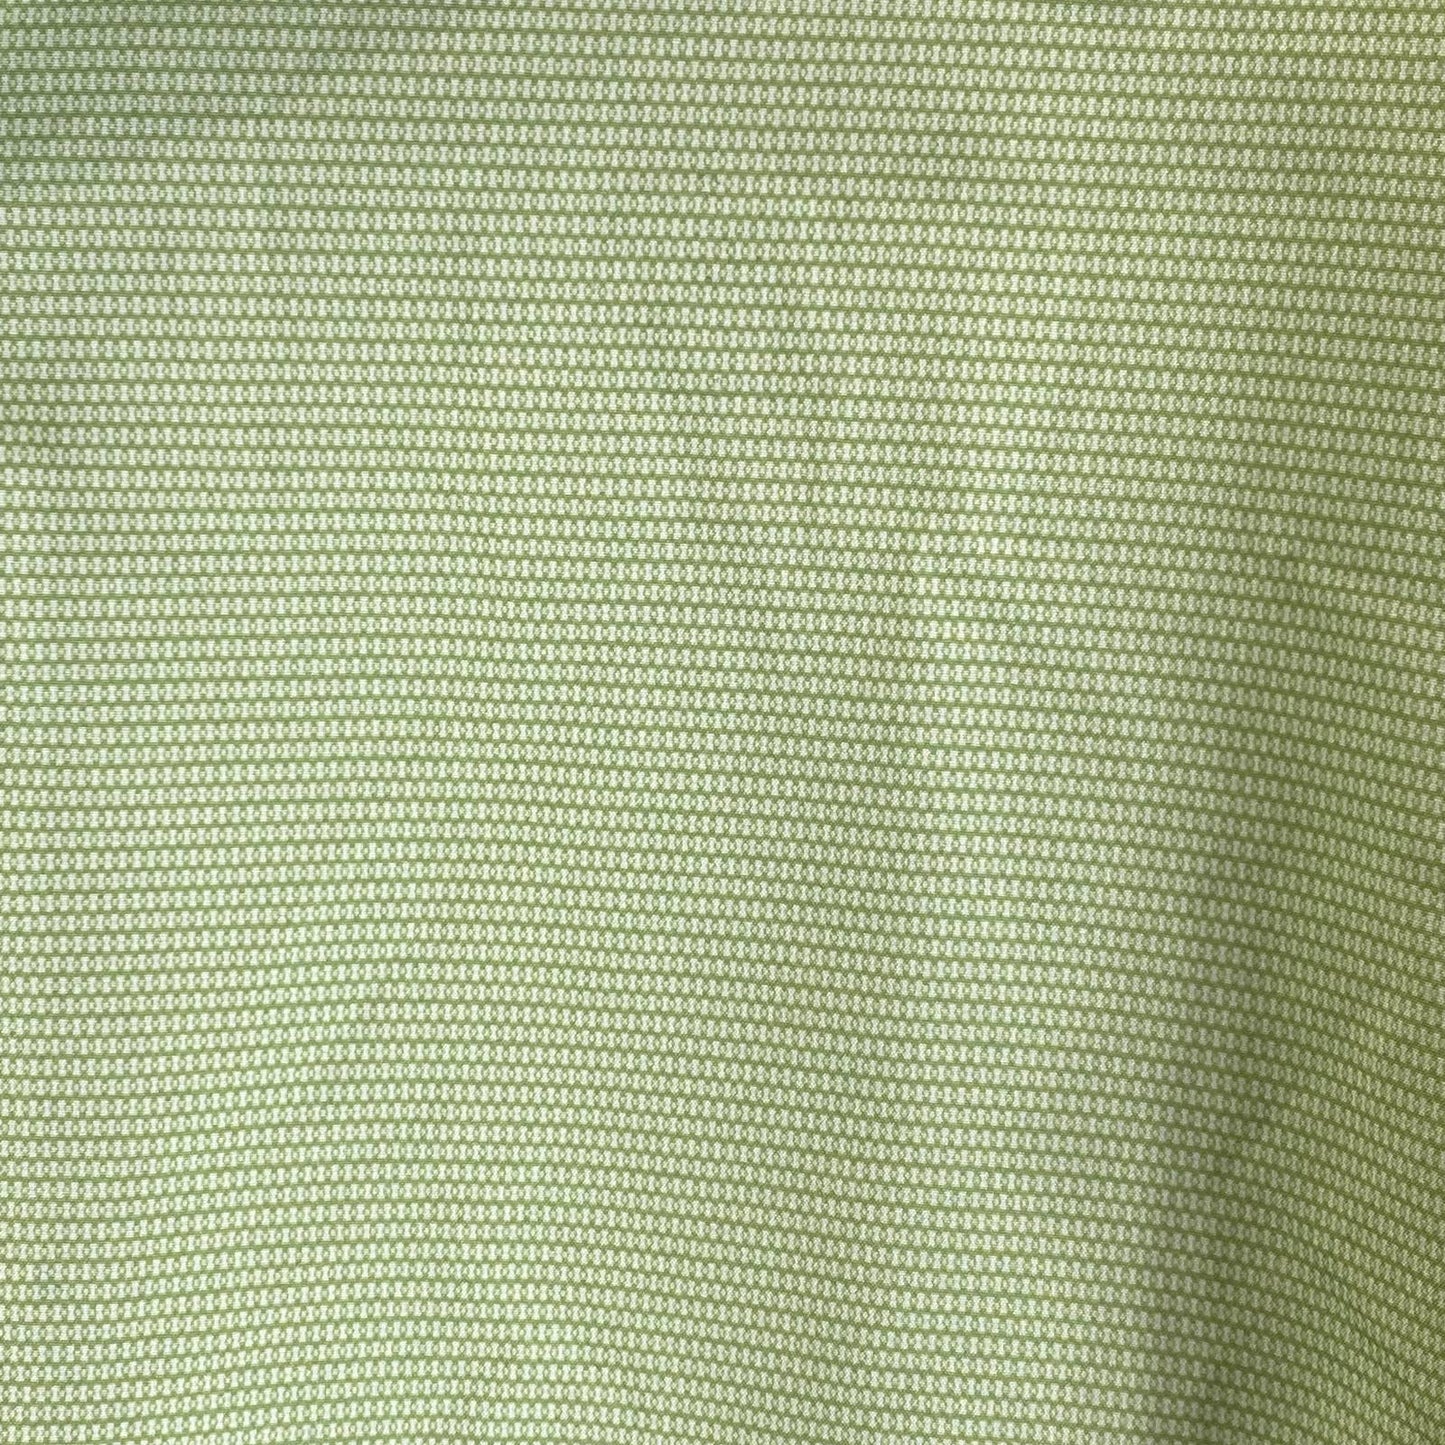 ALFANI Men's Green Mini Geo-Print Slim-Fit Stretch Button-Up Shirt SZ 16-16.5